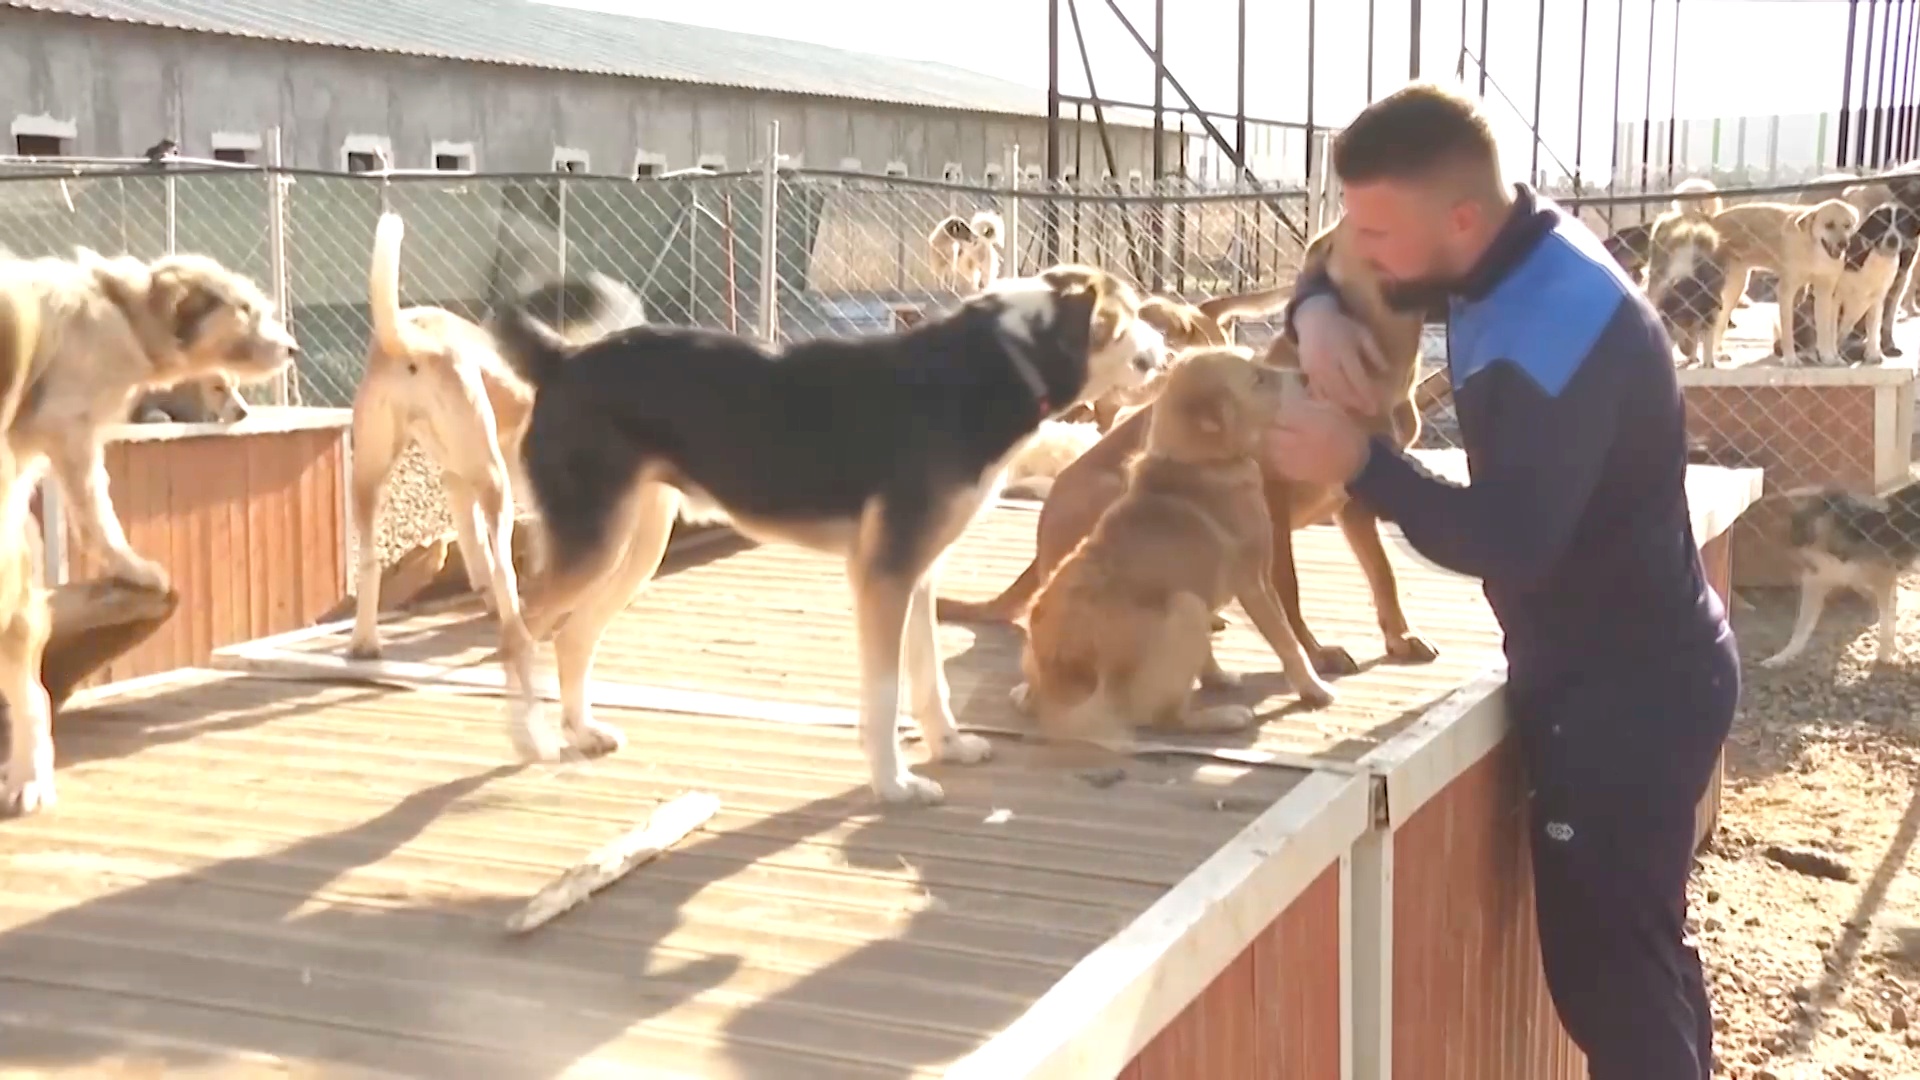 В Косово учитель физкультуры открыл приют для 400 уличных собак